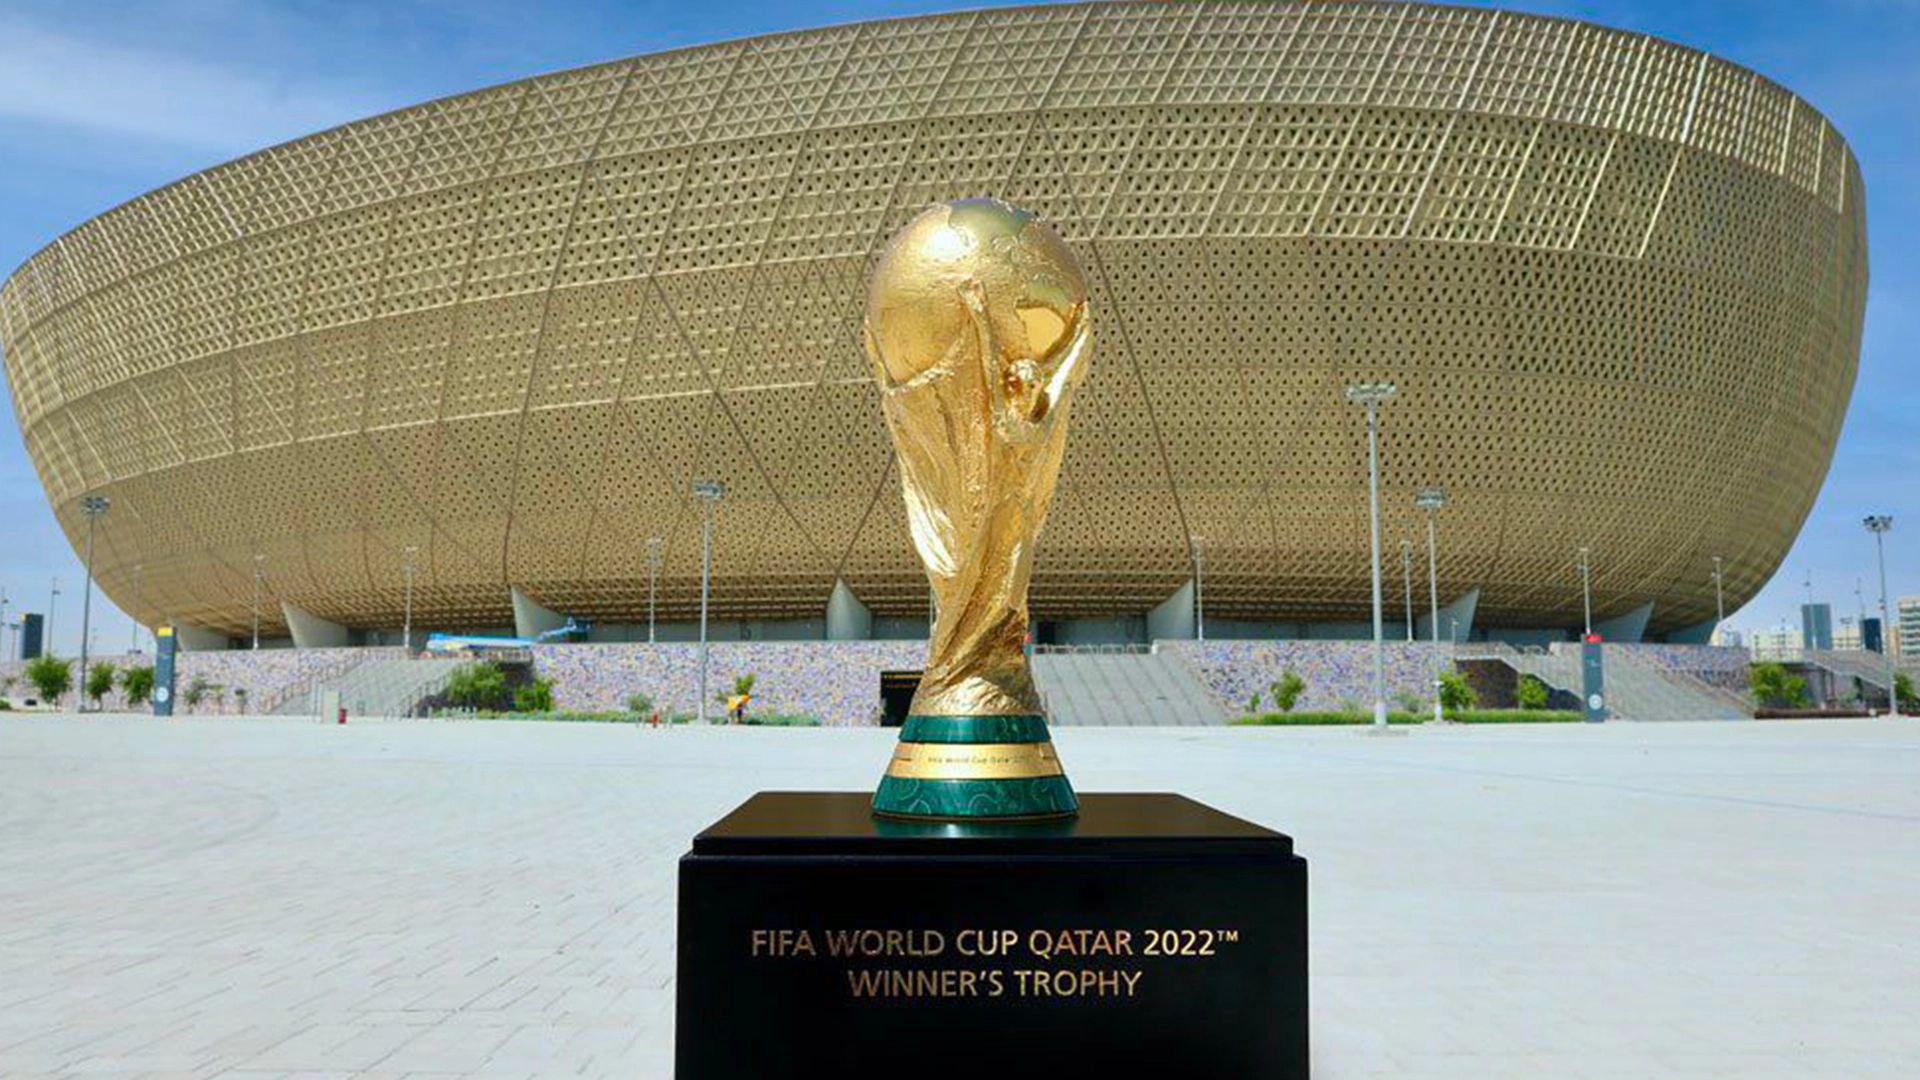 "فيفا" يؤكد عدم وجود أي تلاعبات في مباريات كأس العالم قطر 2022